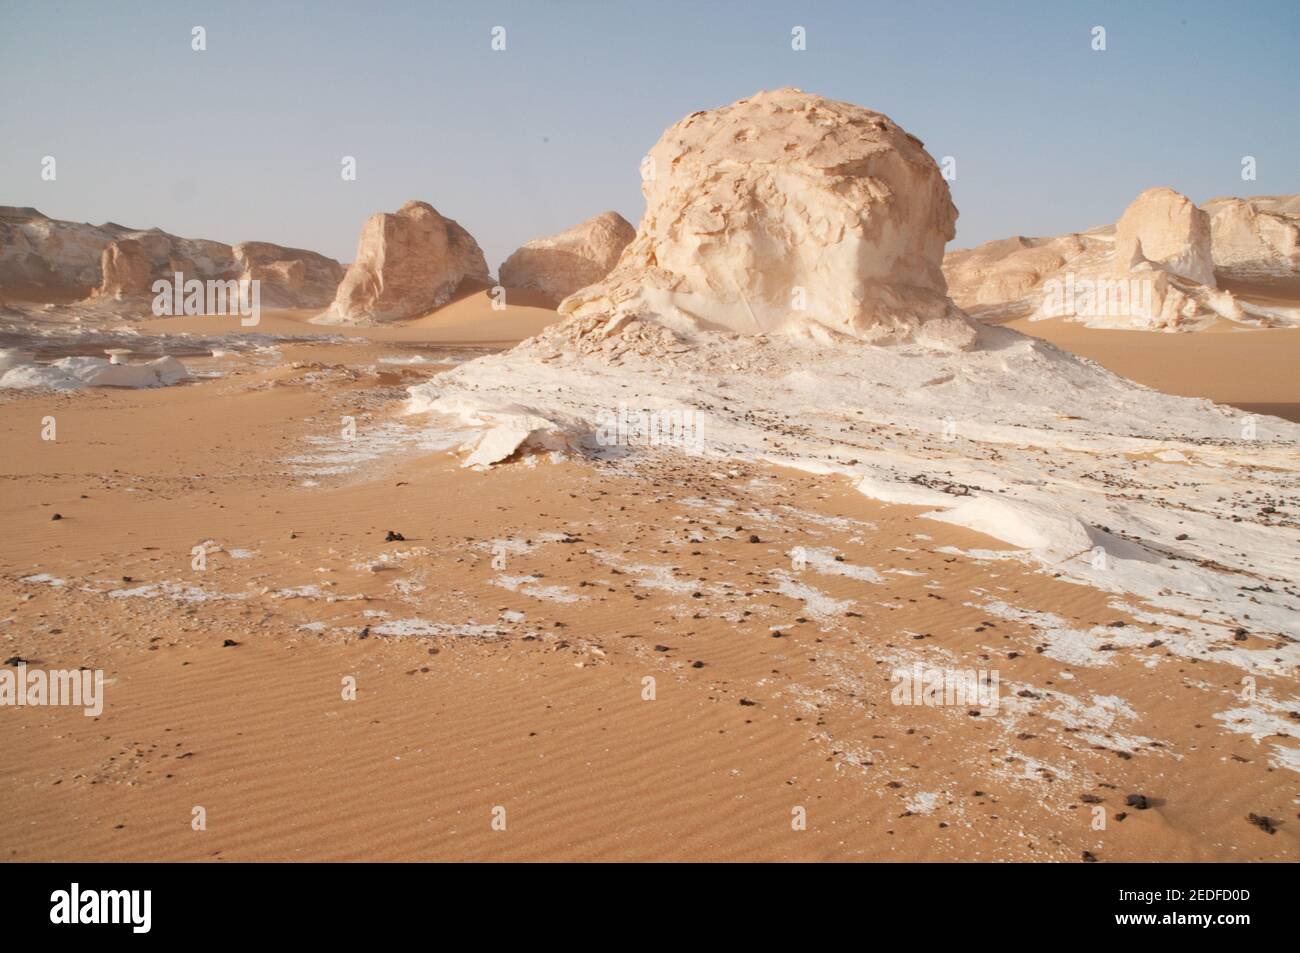 Formations rocheuses de craie blanche et inselbergs mélangés avec du sable dans le parc national du désert blanc, dans la crise de Farfara, région du Sahara, en Égypte. Banque D'Images